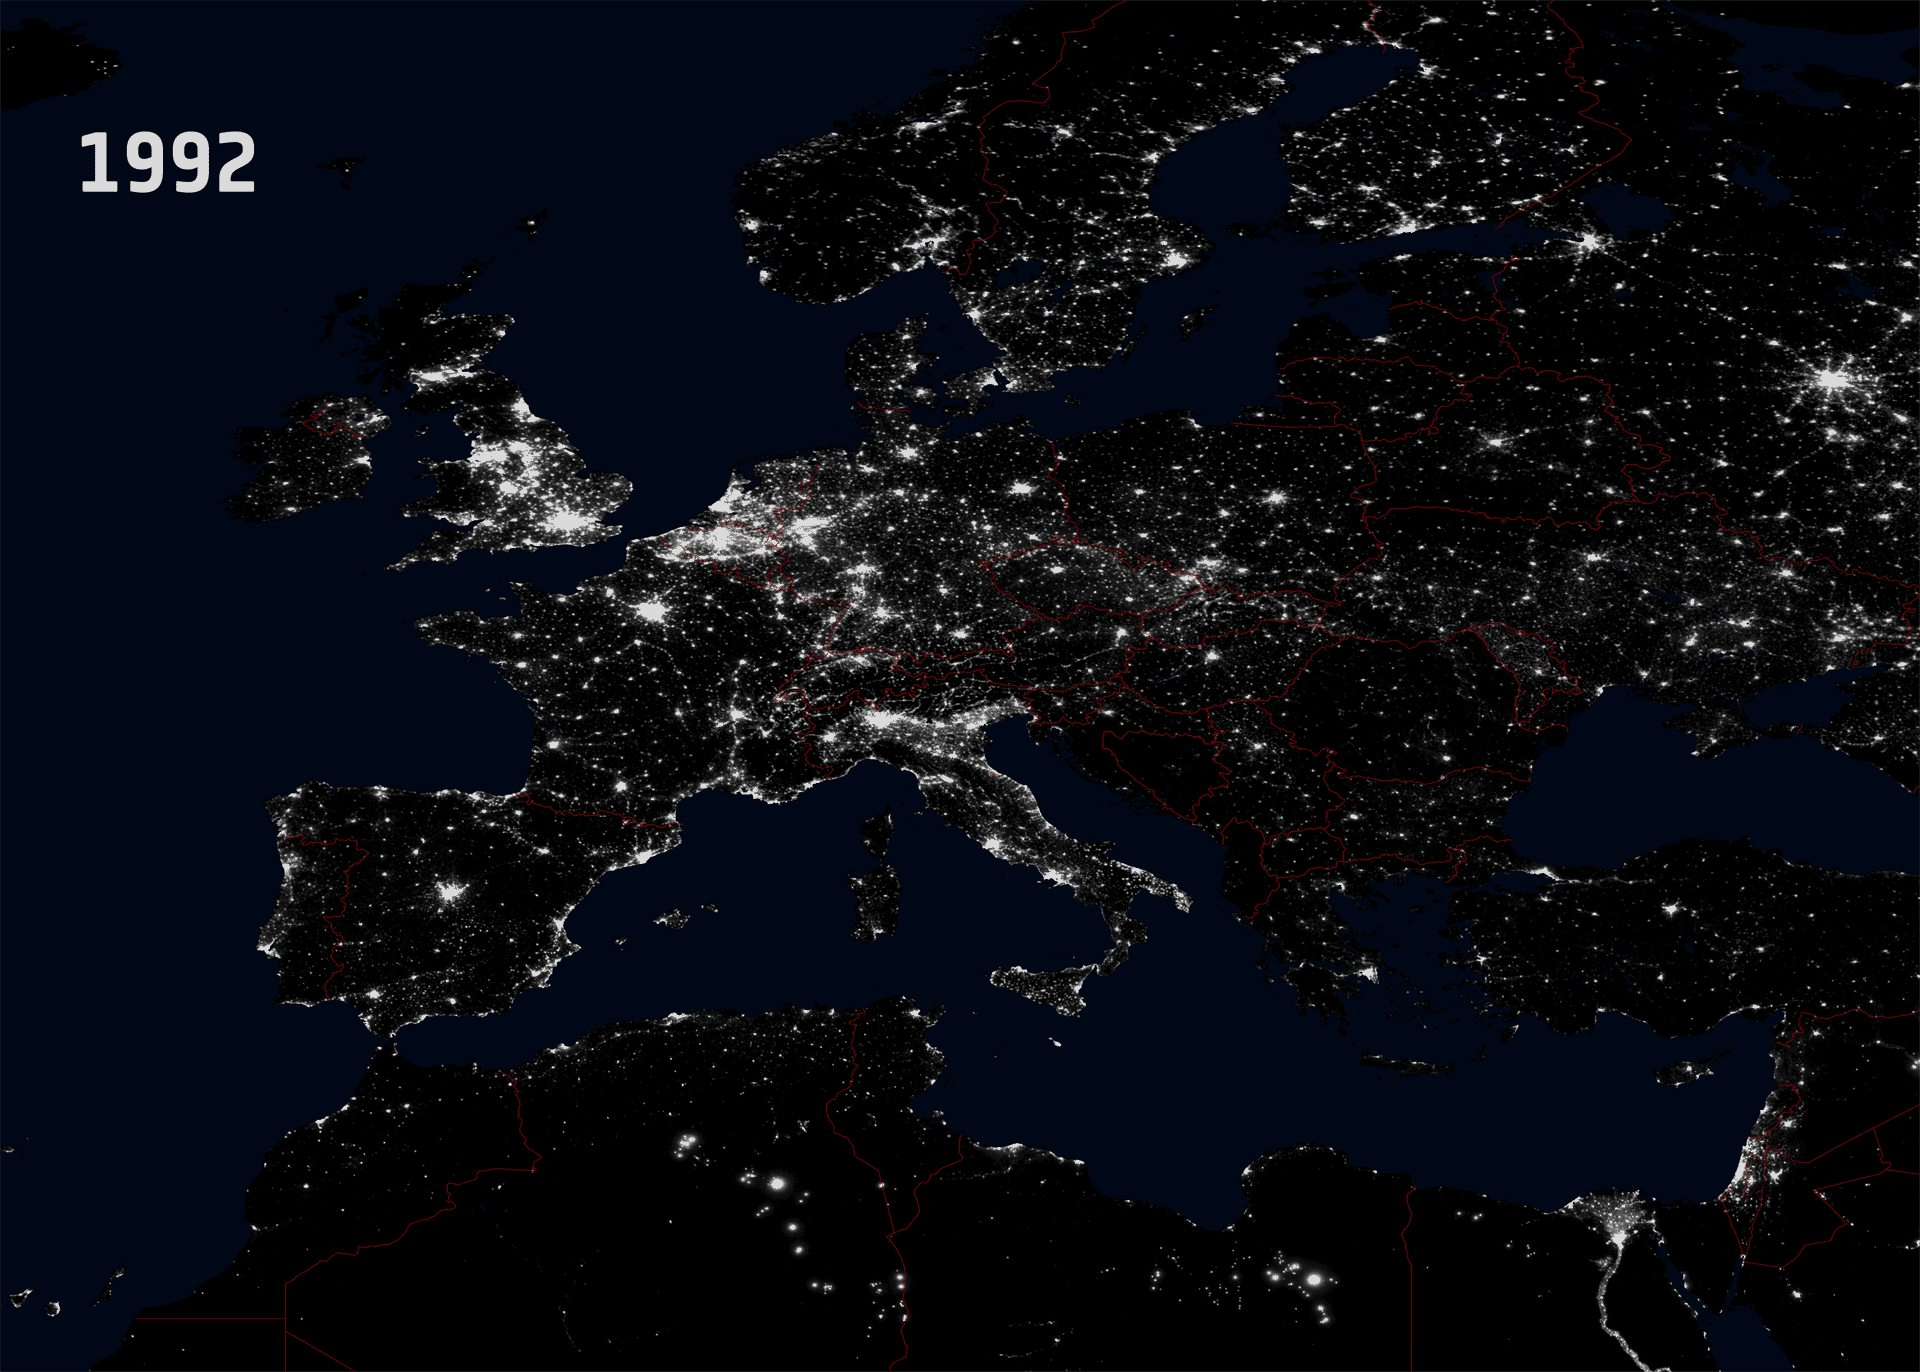 Europa bei Nacht